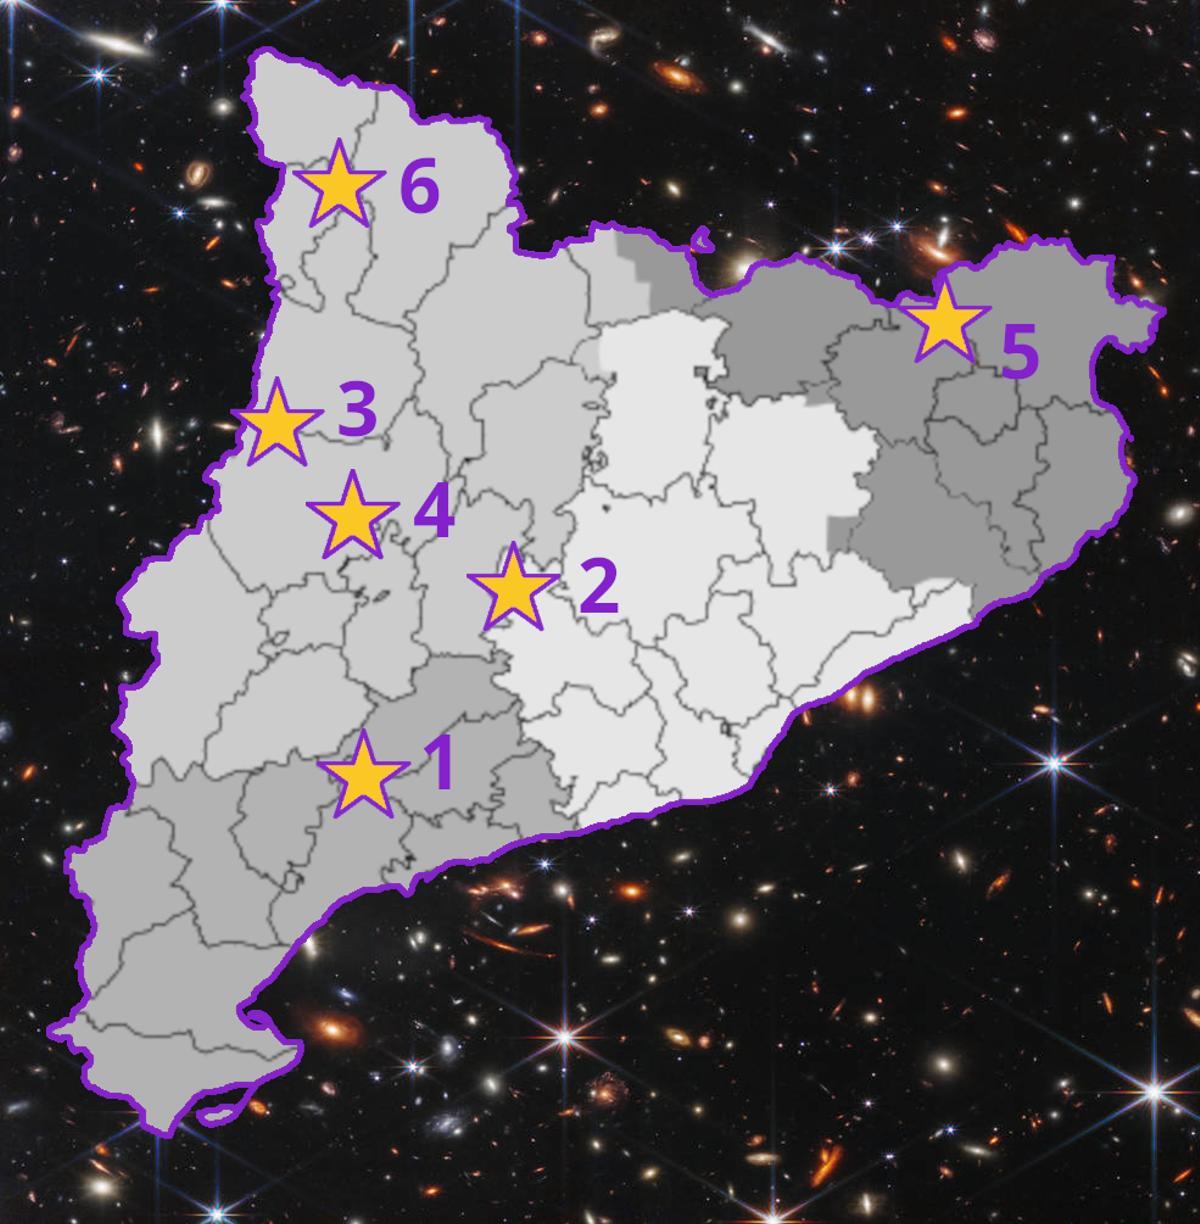 Mapa con los observatorios astronómicos y zonas con certificados de calidad del cielo nocturno